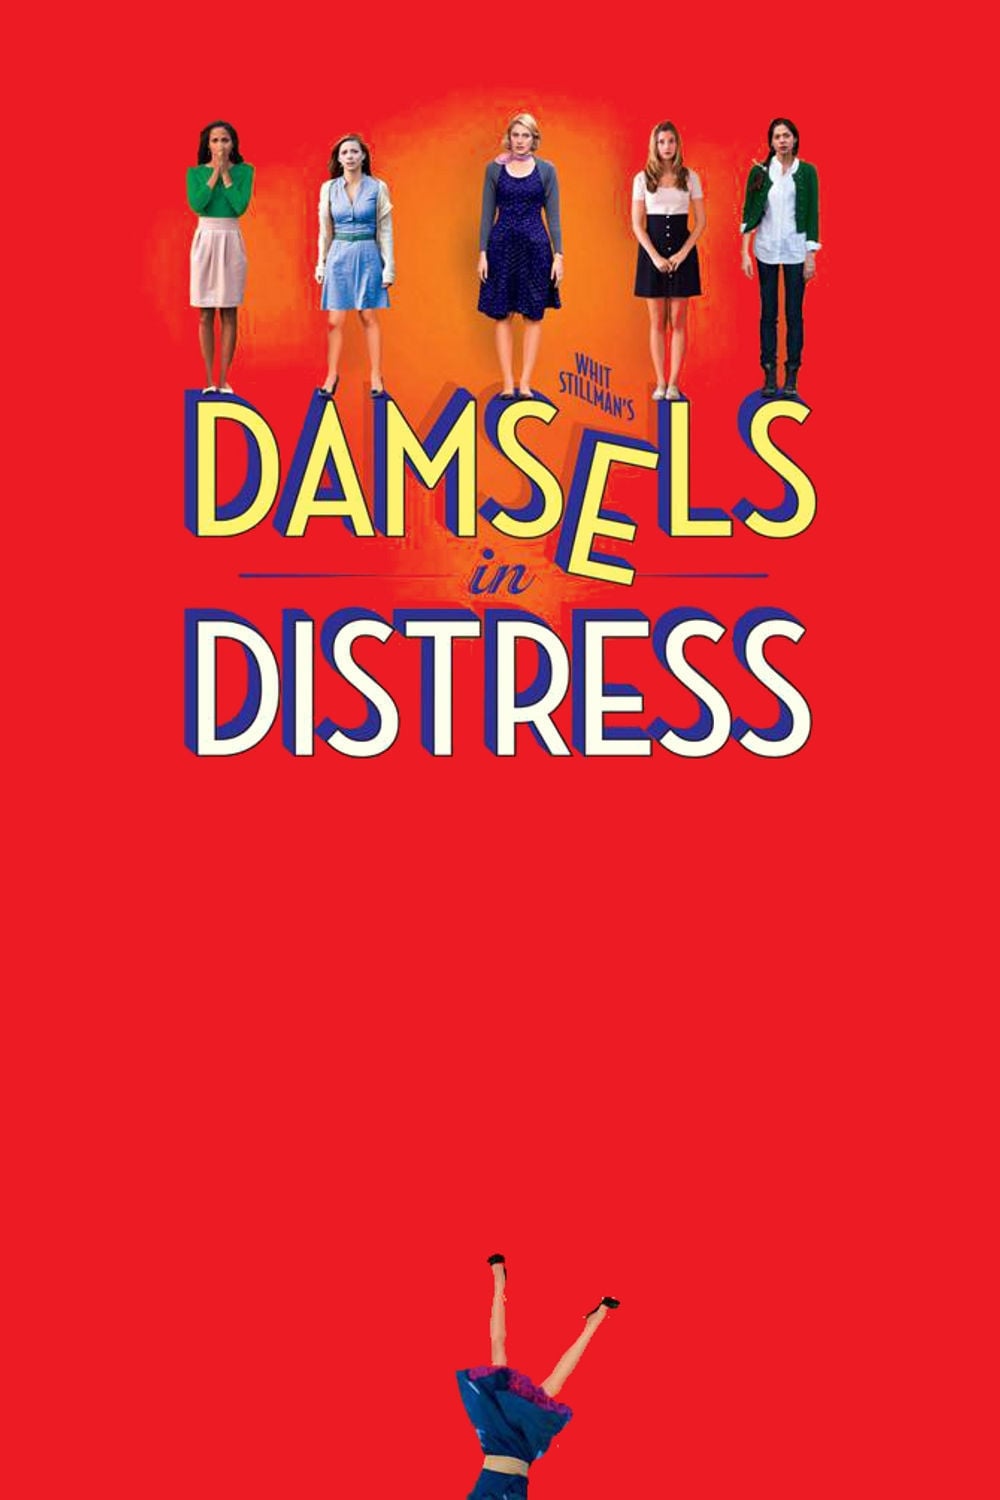 Damsels in Distress (2012)